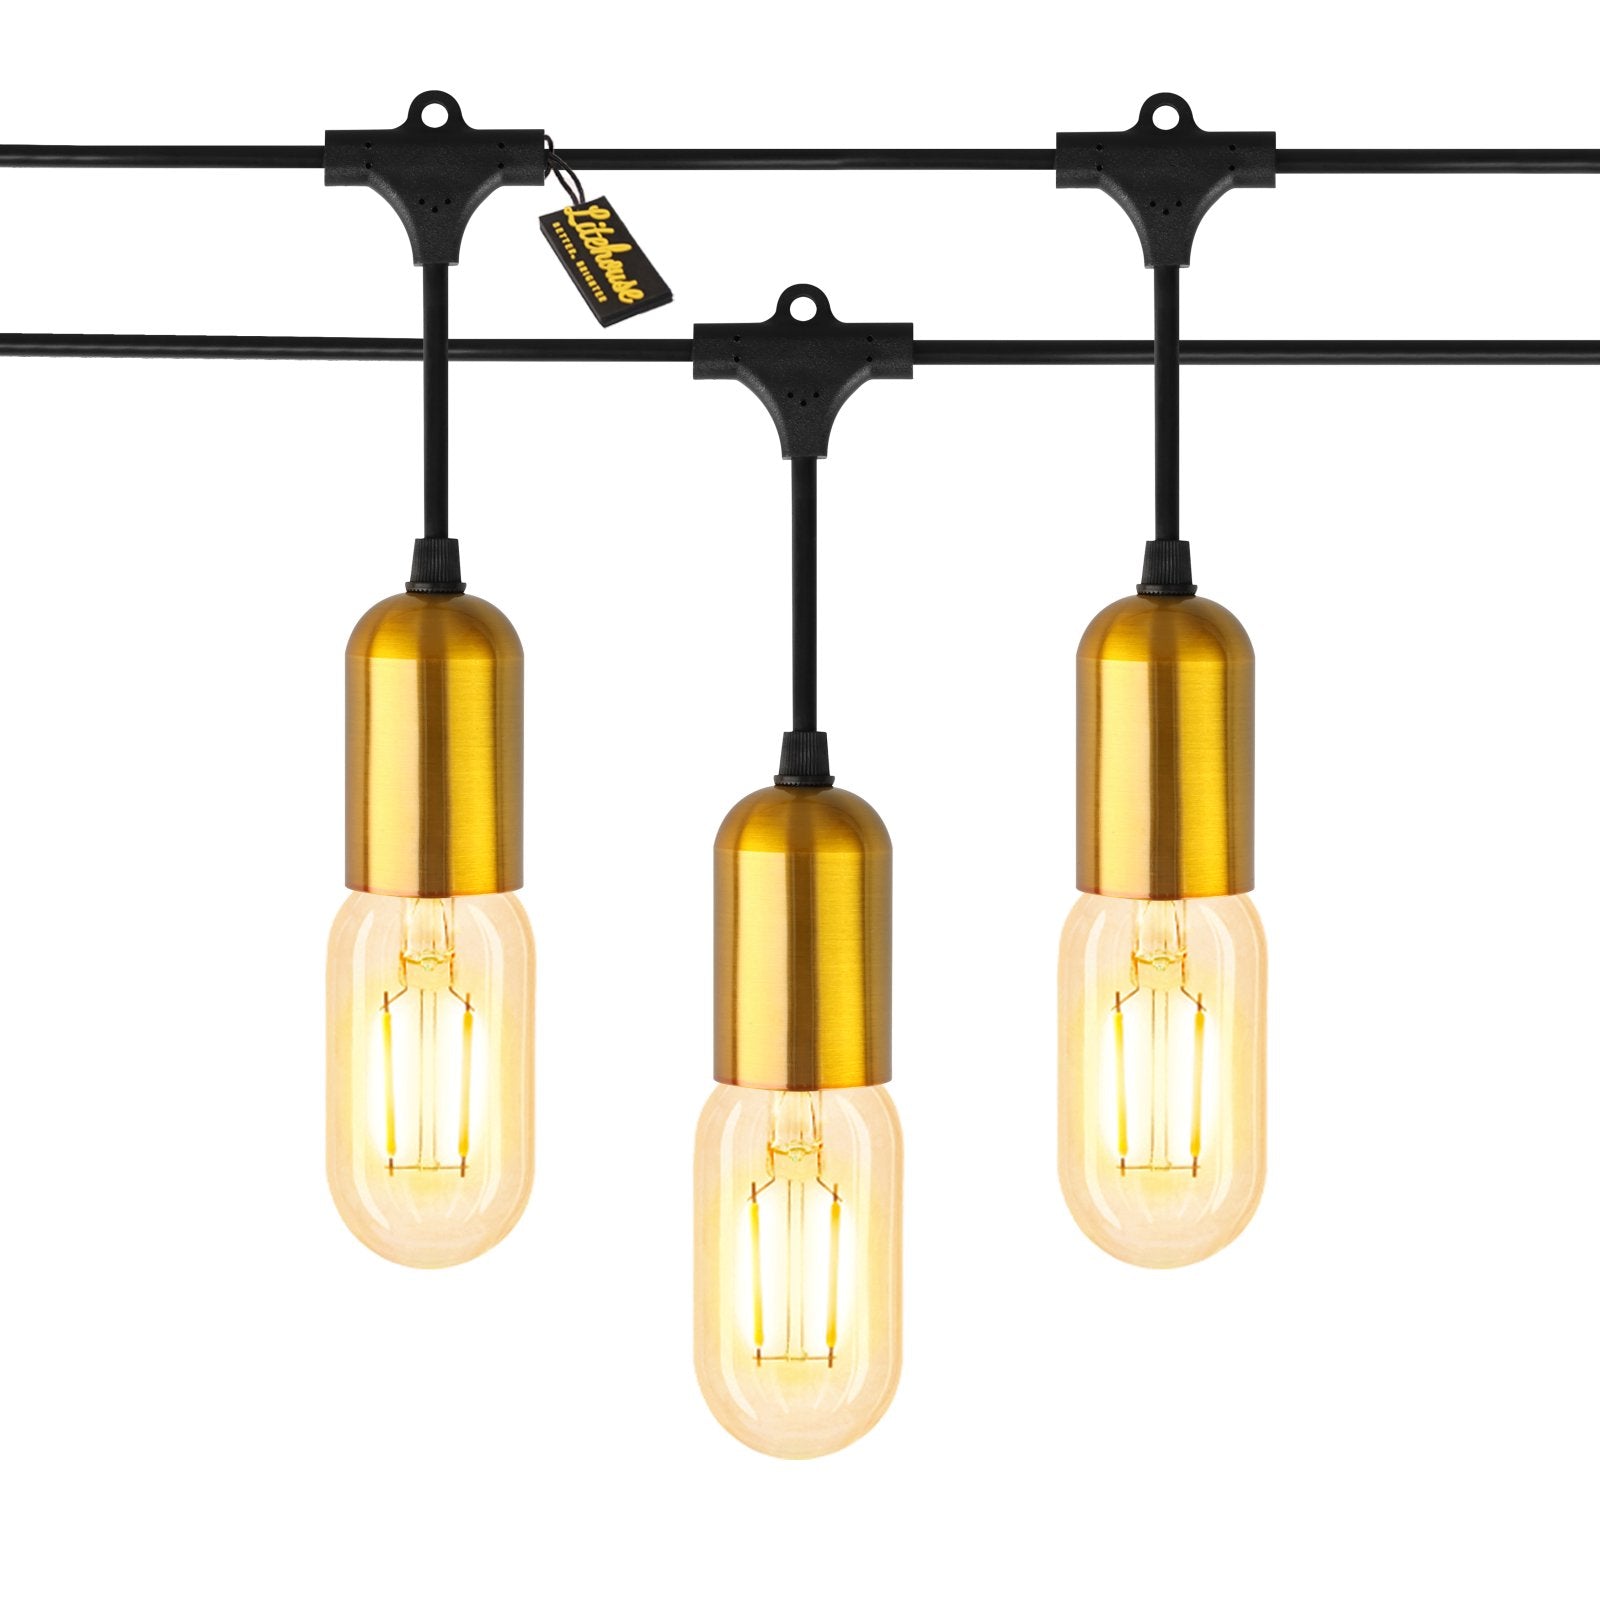 Litehouse LED Festoon Gold Socket Bulb String Light - Modern Bulb - 220-240V - Black String - Litehouse